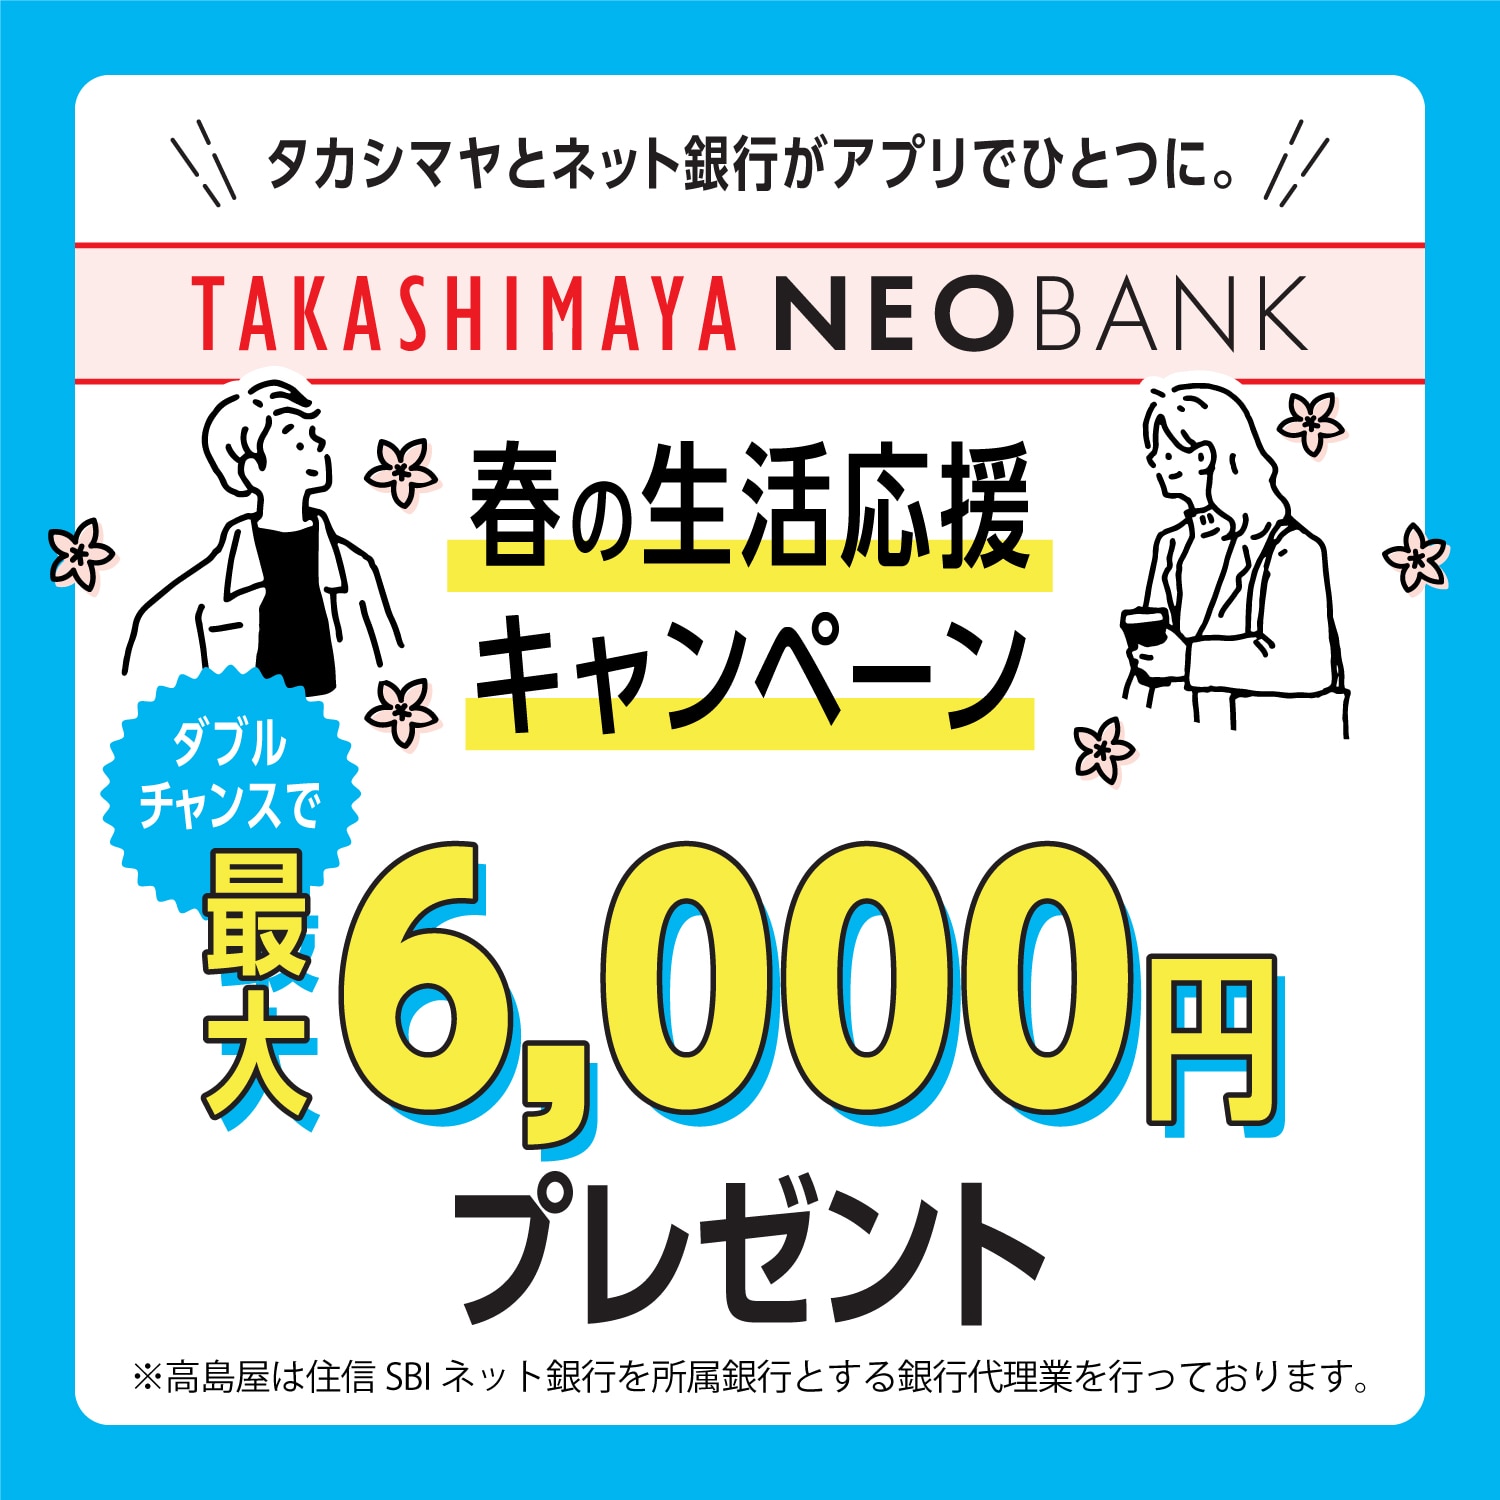 タカシマヤとネット銀行がアプリでひとつに。春の生活応援キャンペーン 最大6,000円プレゼント